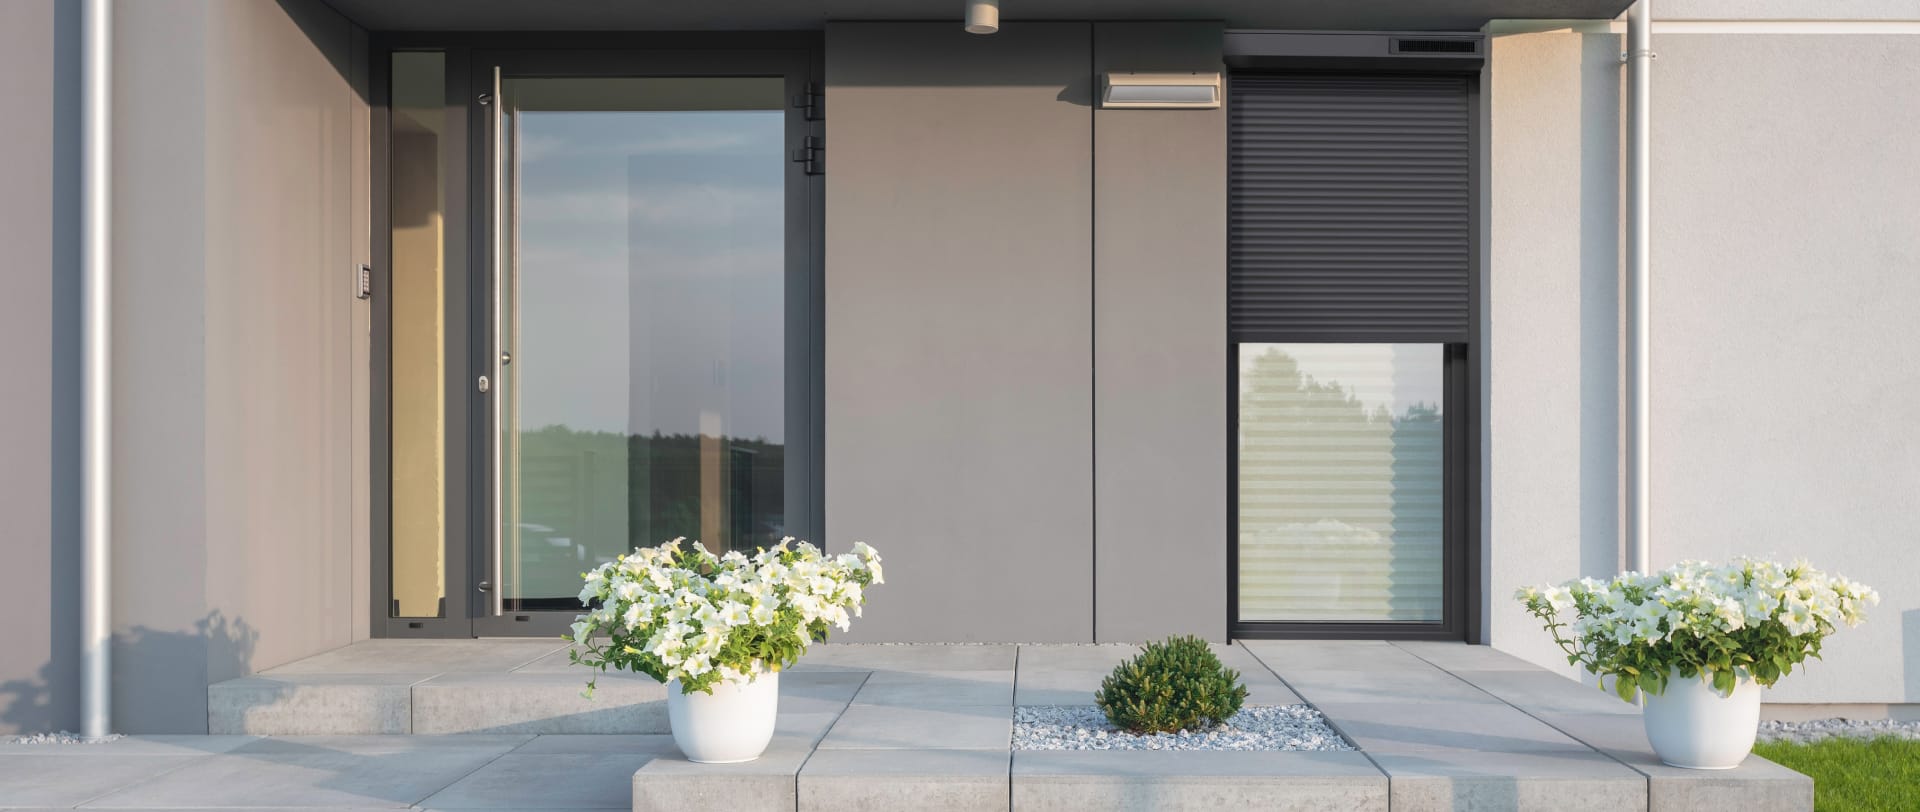 Vue depuis la terrasse d'une maison moderne grise avec des volets roulants noirs et deux pots de fleurs blanc